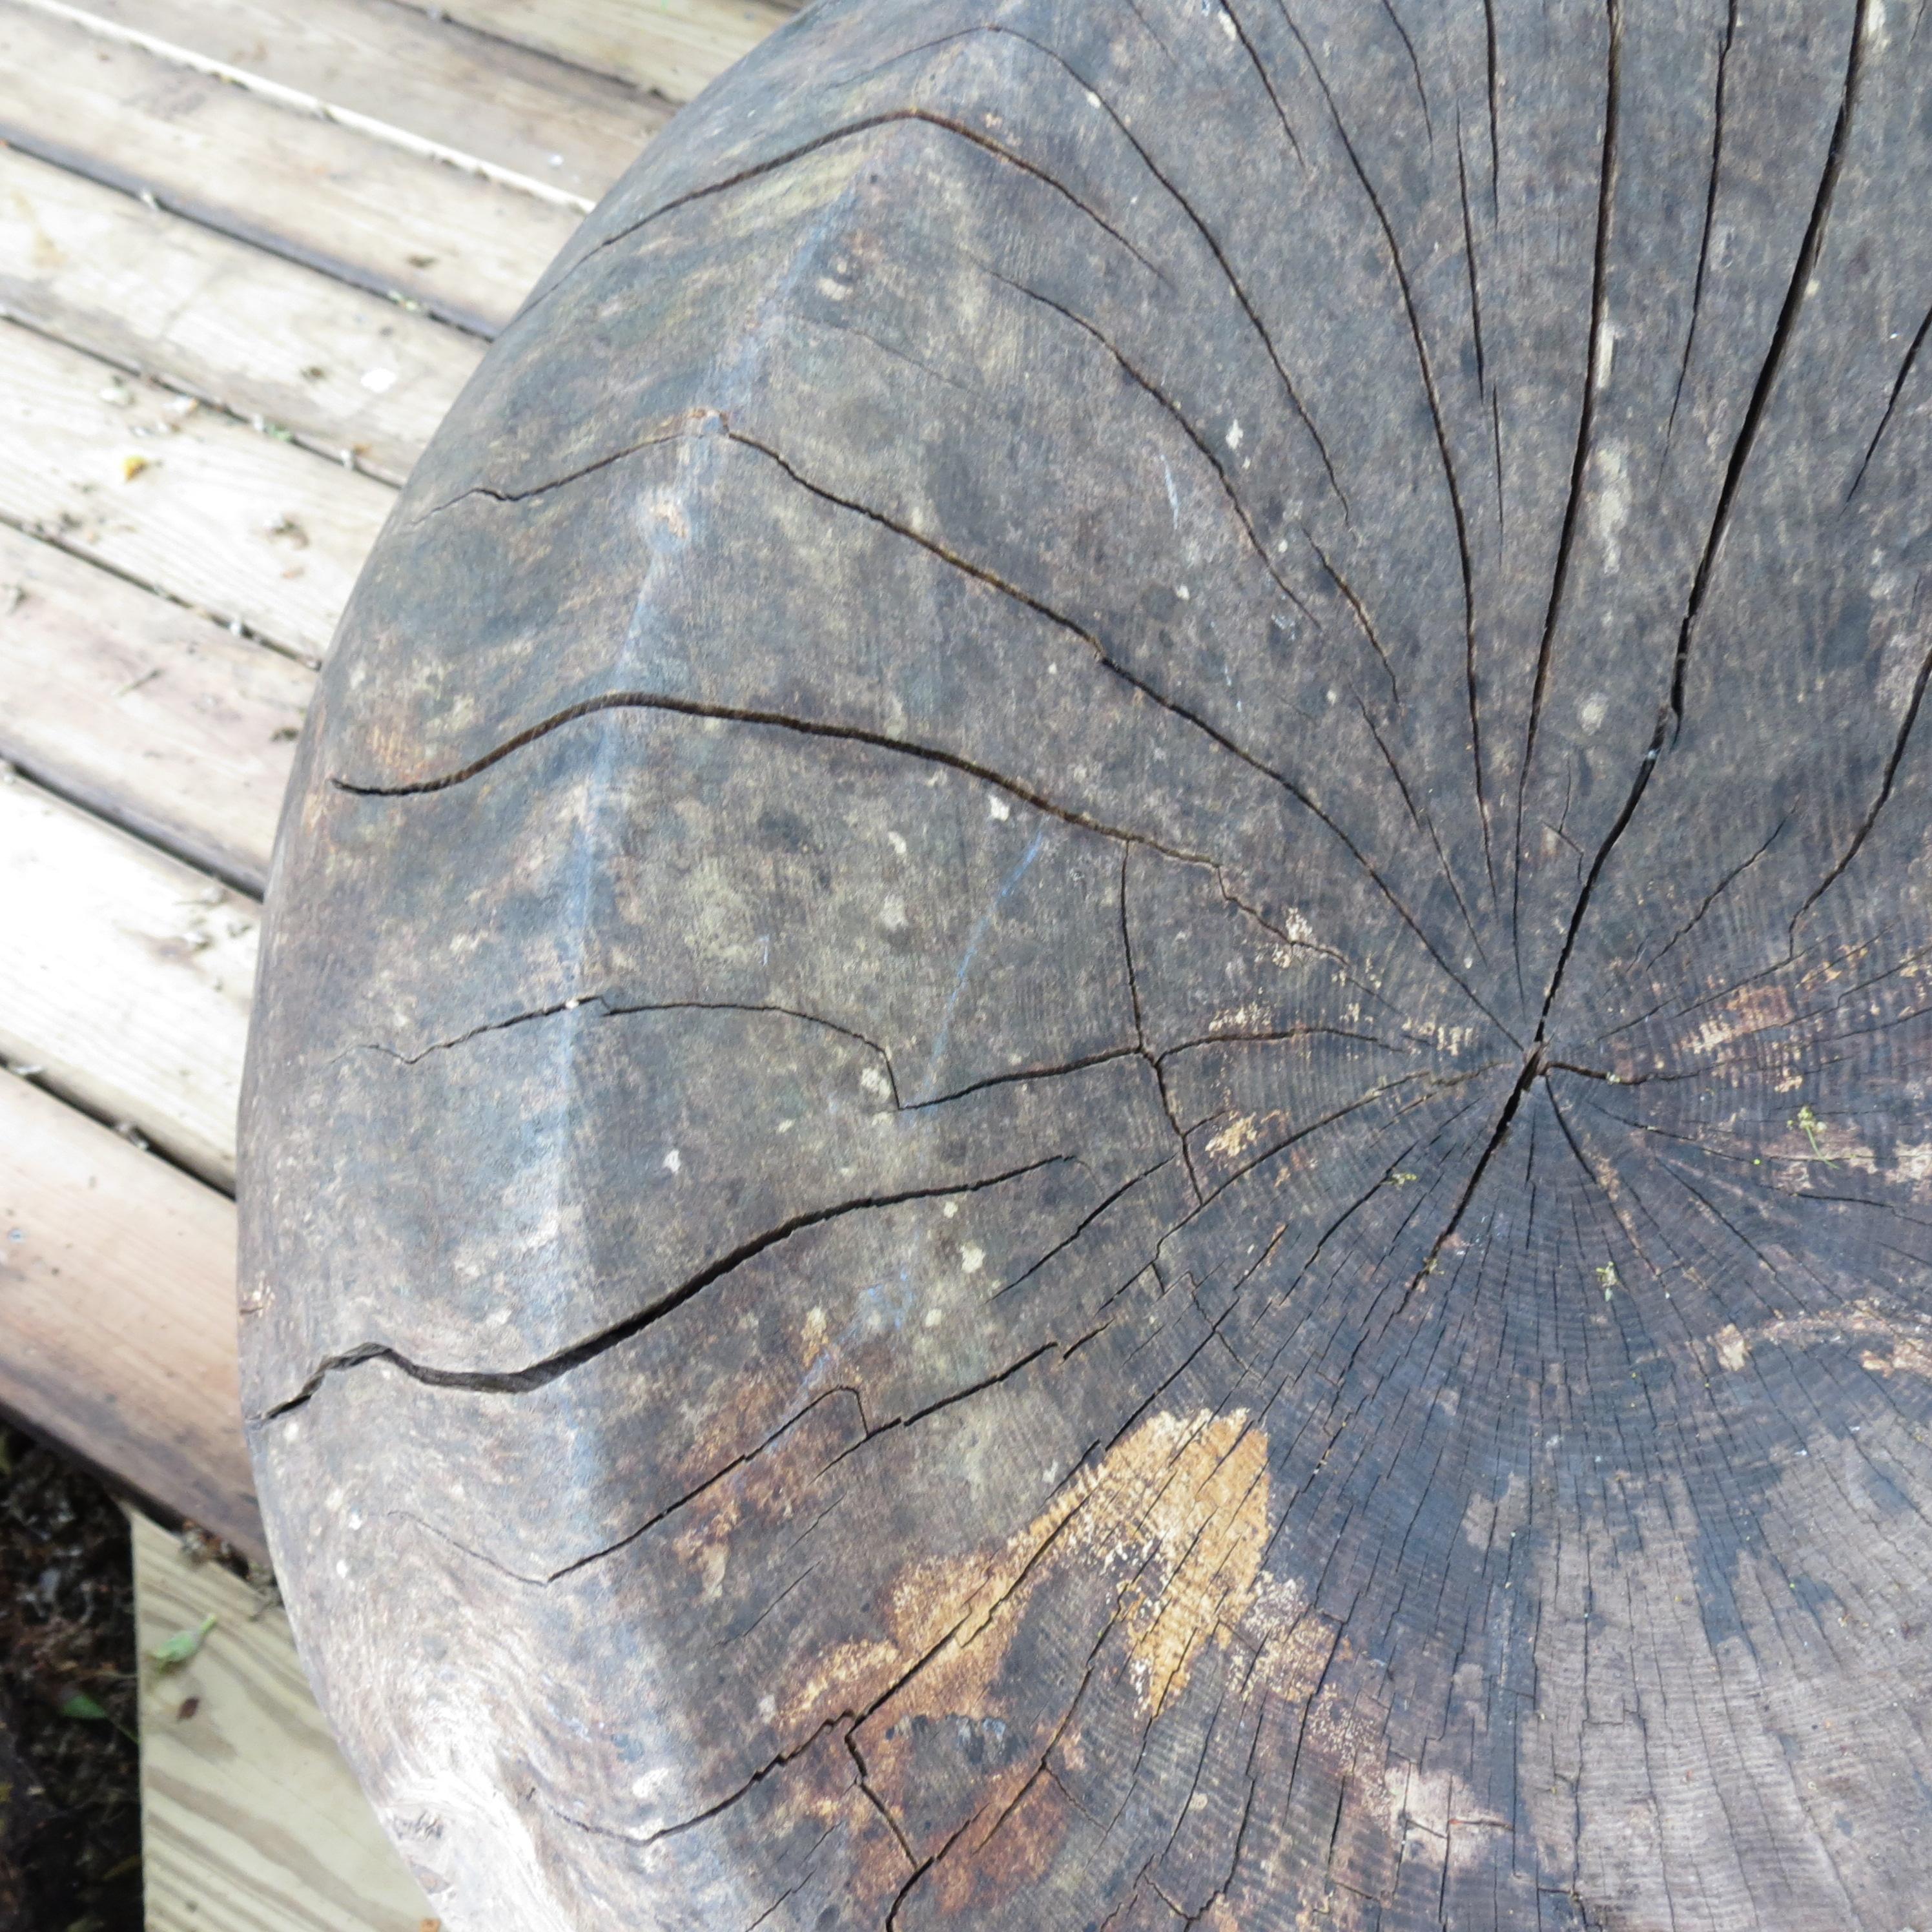 Large Sculptural Bespoke Made Circular Ball Ash Wooden Garden Chair 